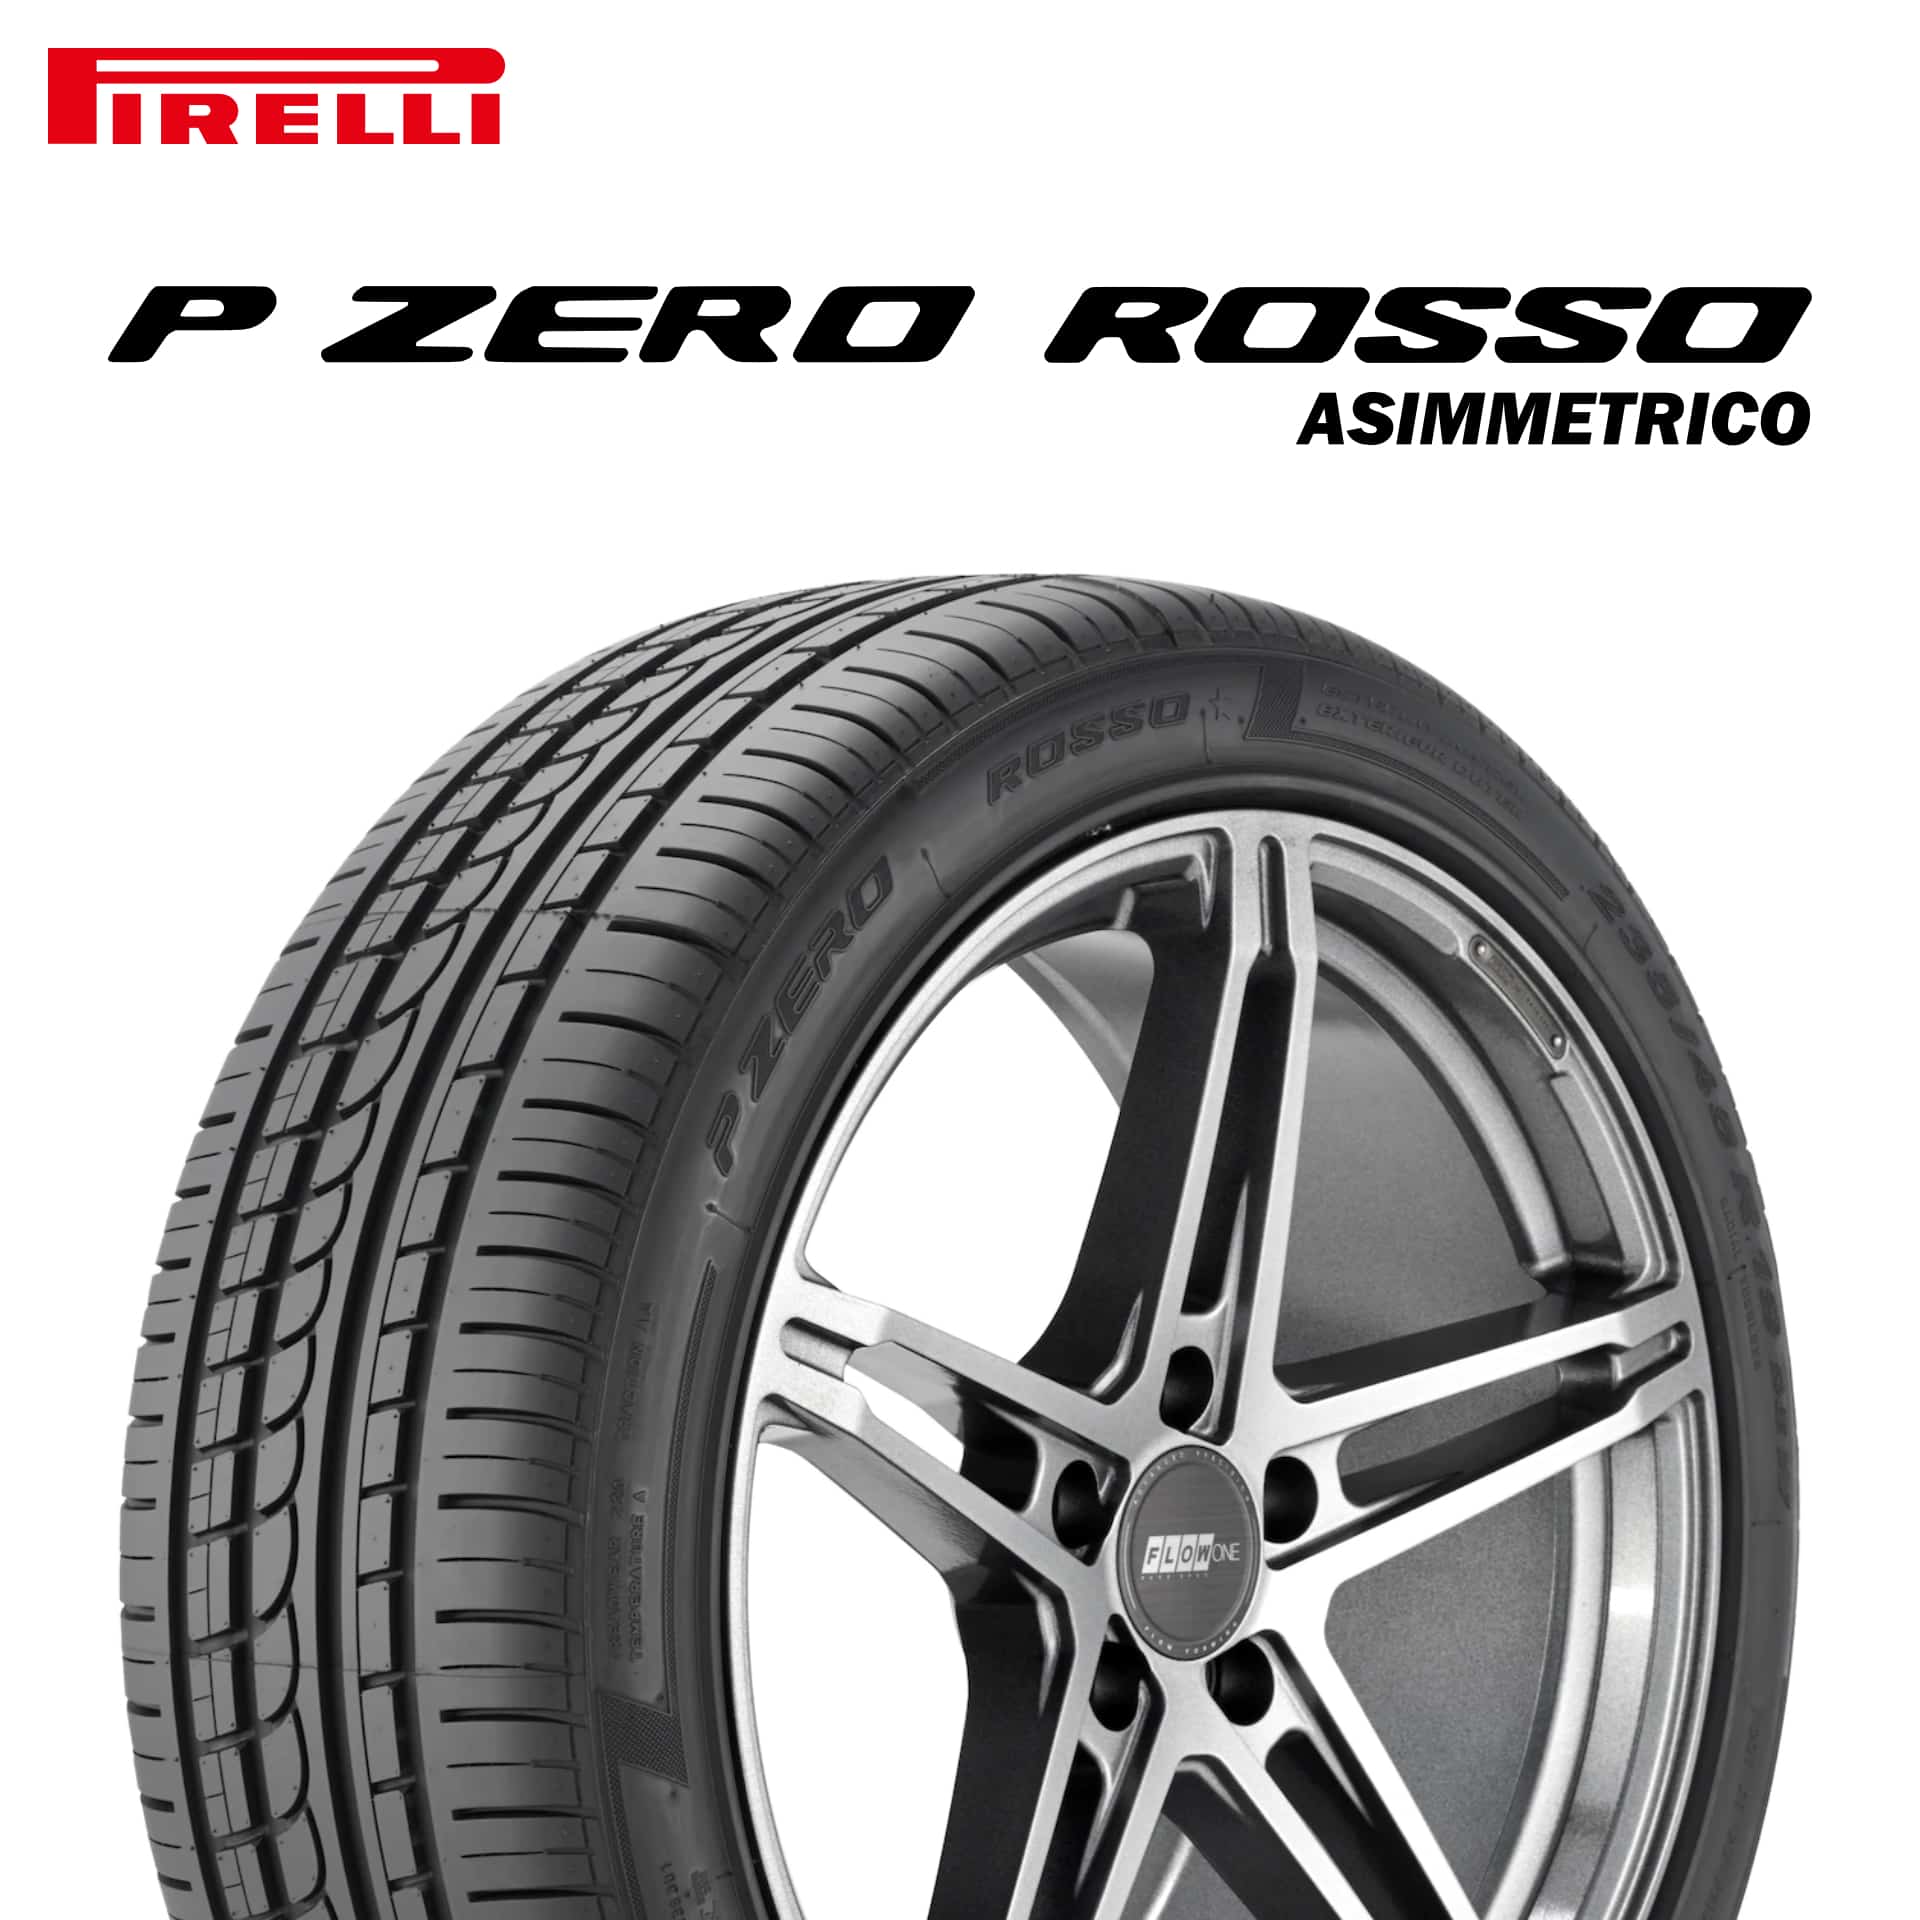 23年製 245/45R16 (94Y) N5 ピレリ P ZERO ROSSO ASIMMETRICO (ピーゼロ ロッソ アシンメトリコ) ポルシェ承認タイヤ 16インチ 新品